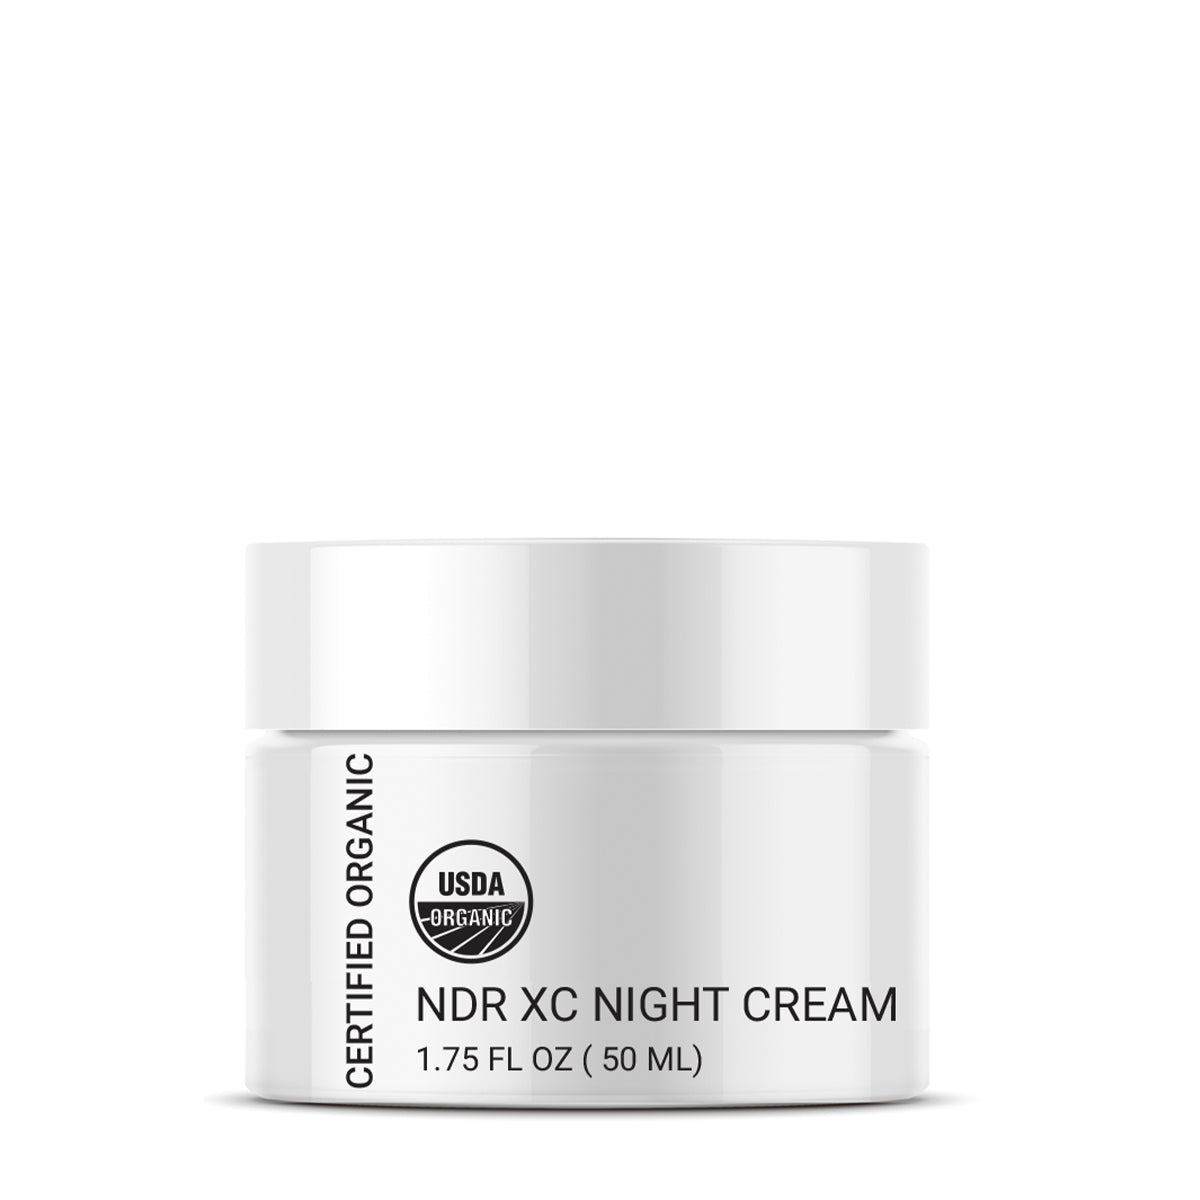 Organic NDR XC Night Cream